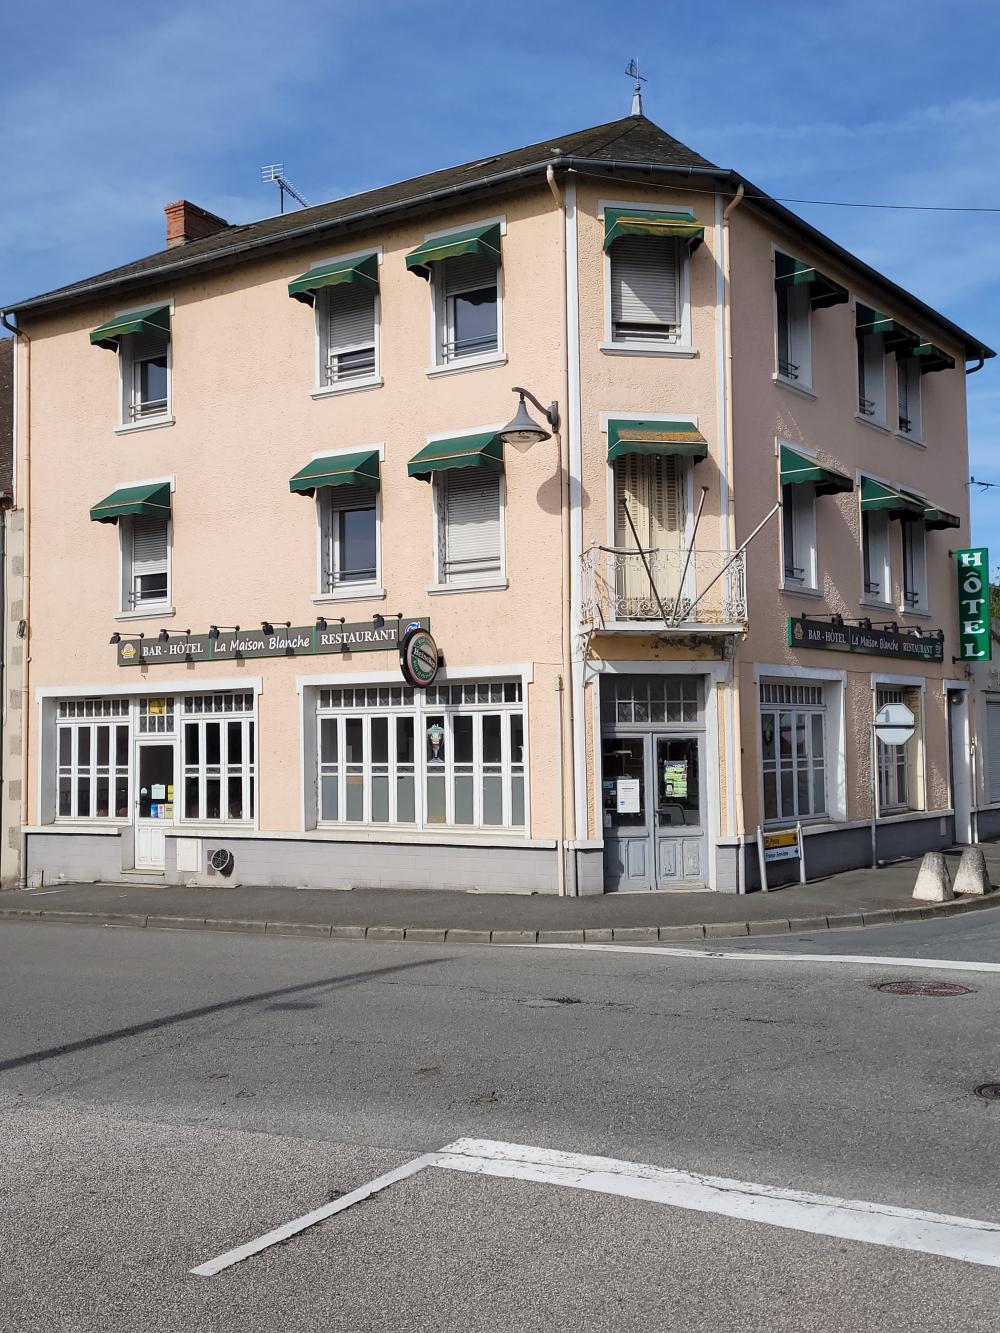 hotel restaurant for sale Gouzon, Creuse ( Nouvelle-Aquitaine) picture 1